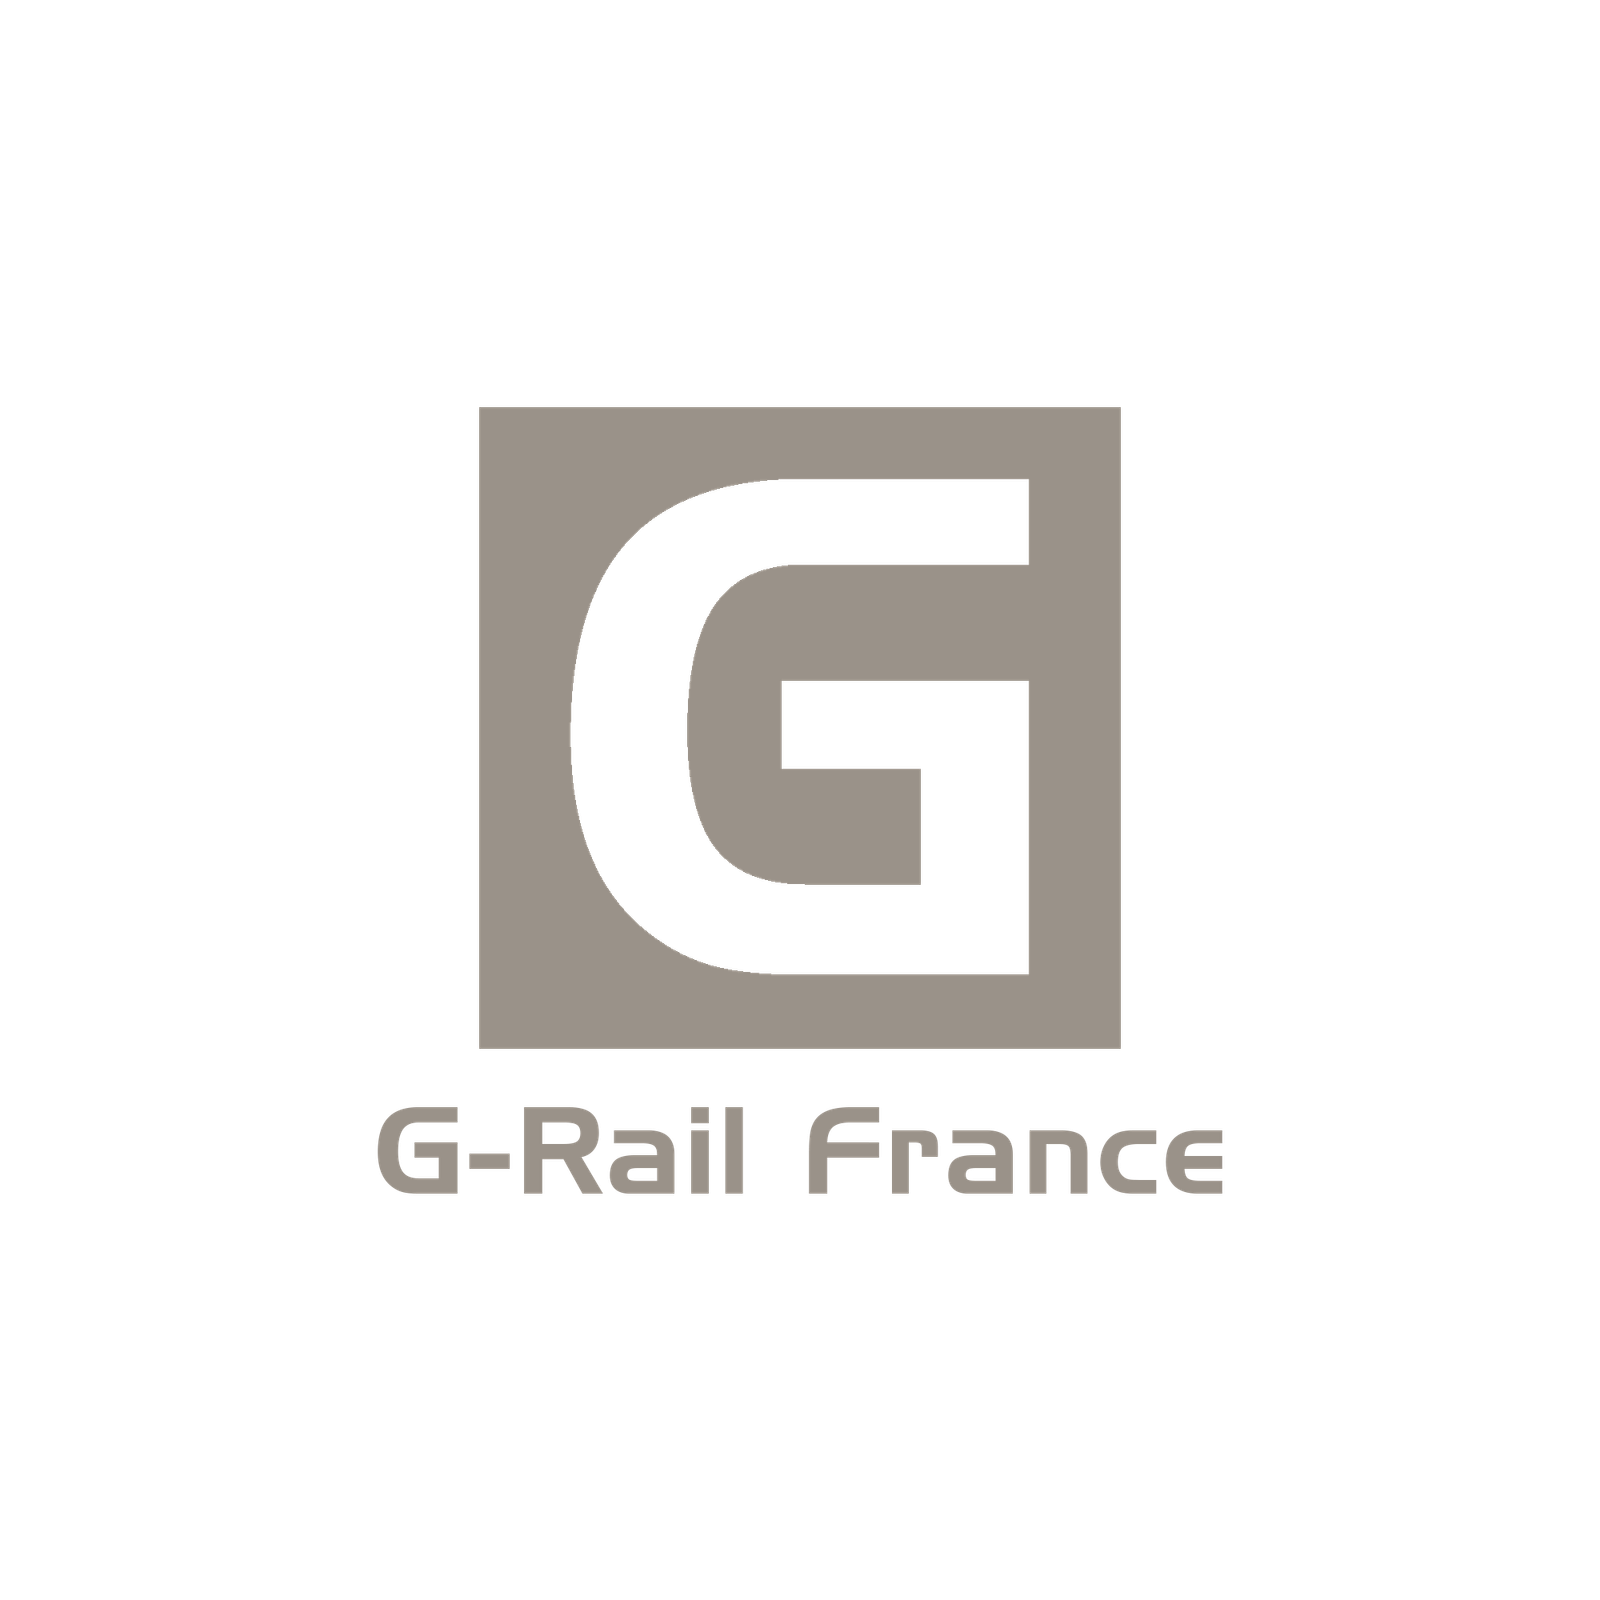 G-Rail France